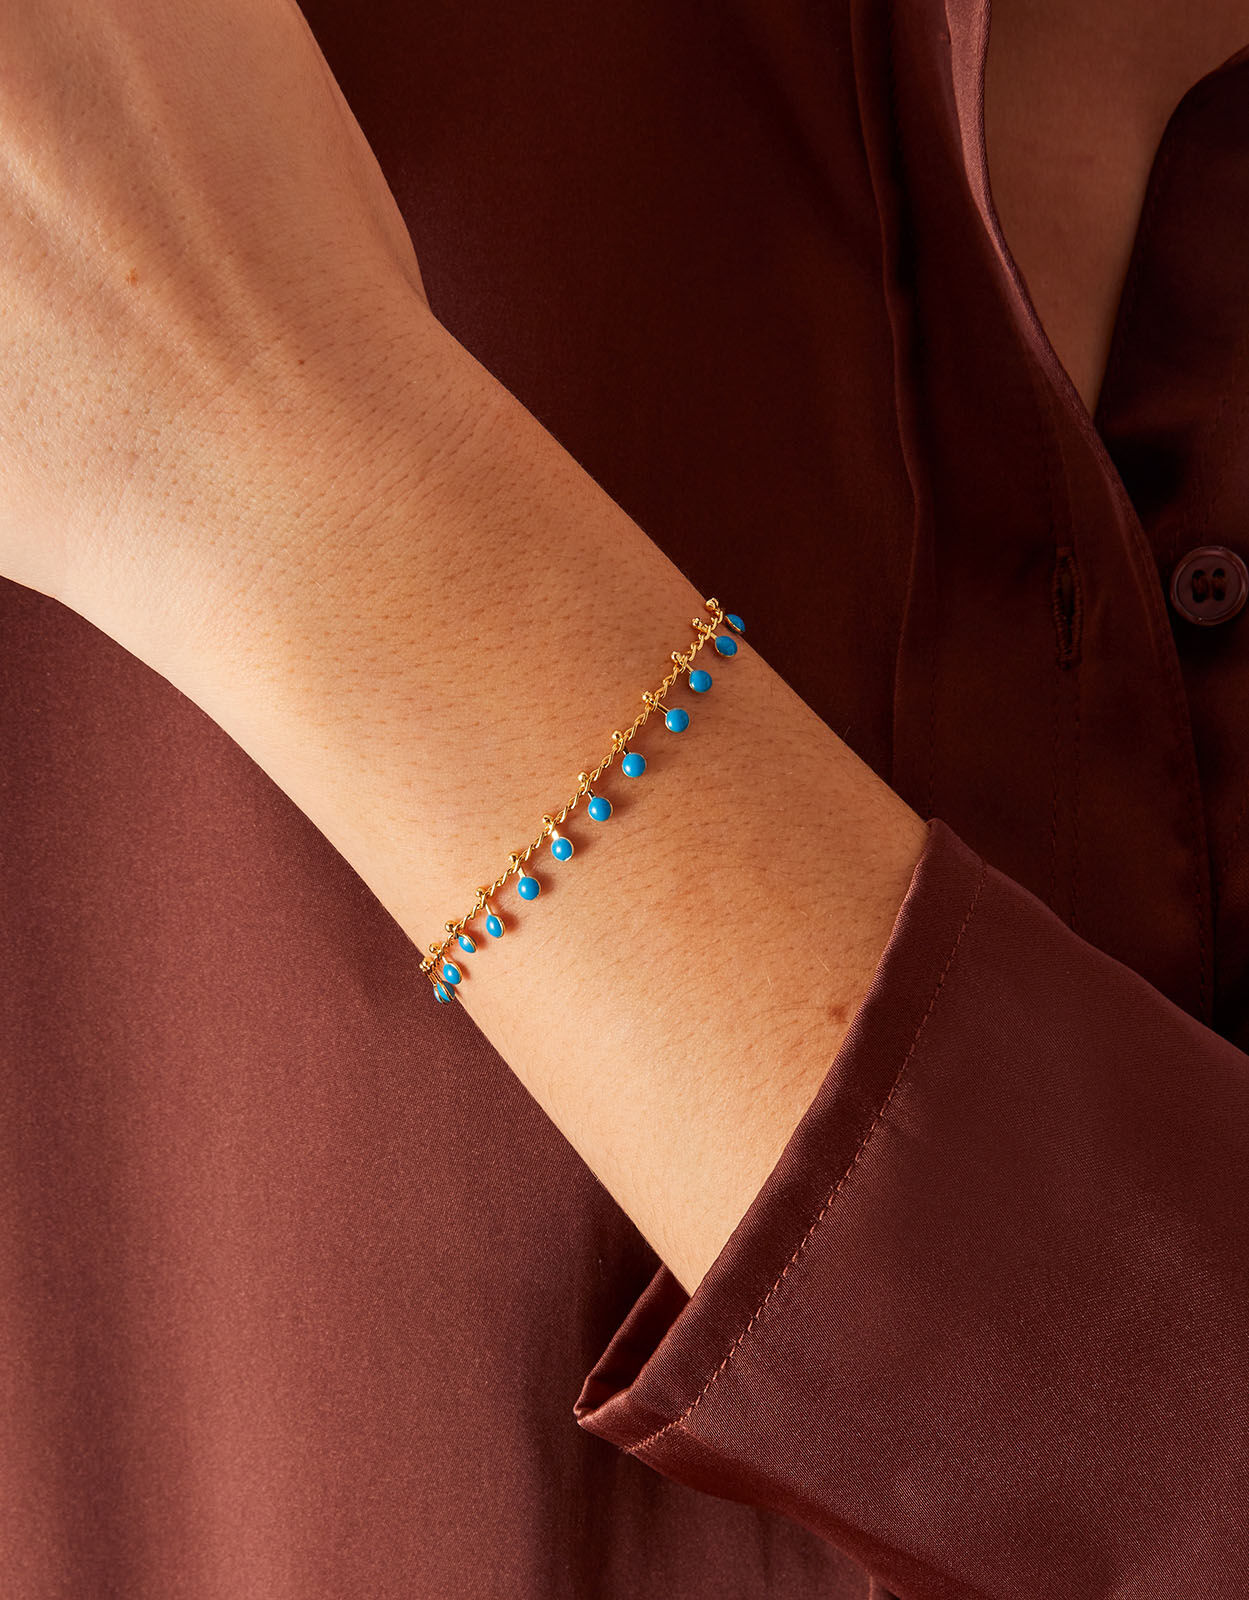 Buy Accessorize London Women's London Charm Bracelet at Amazon.in